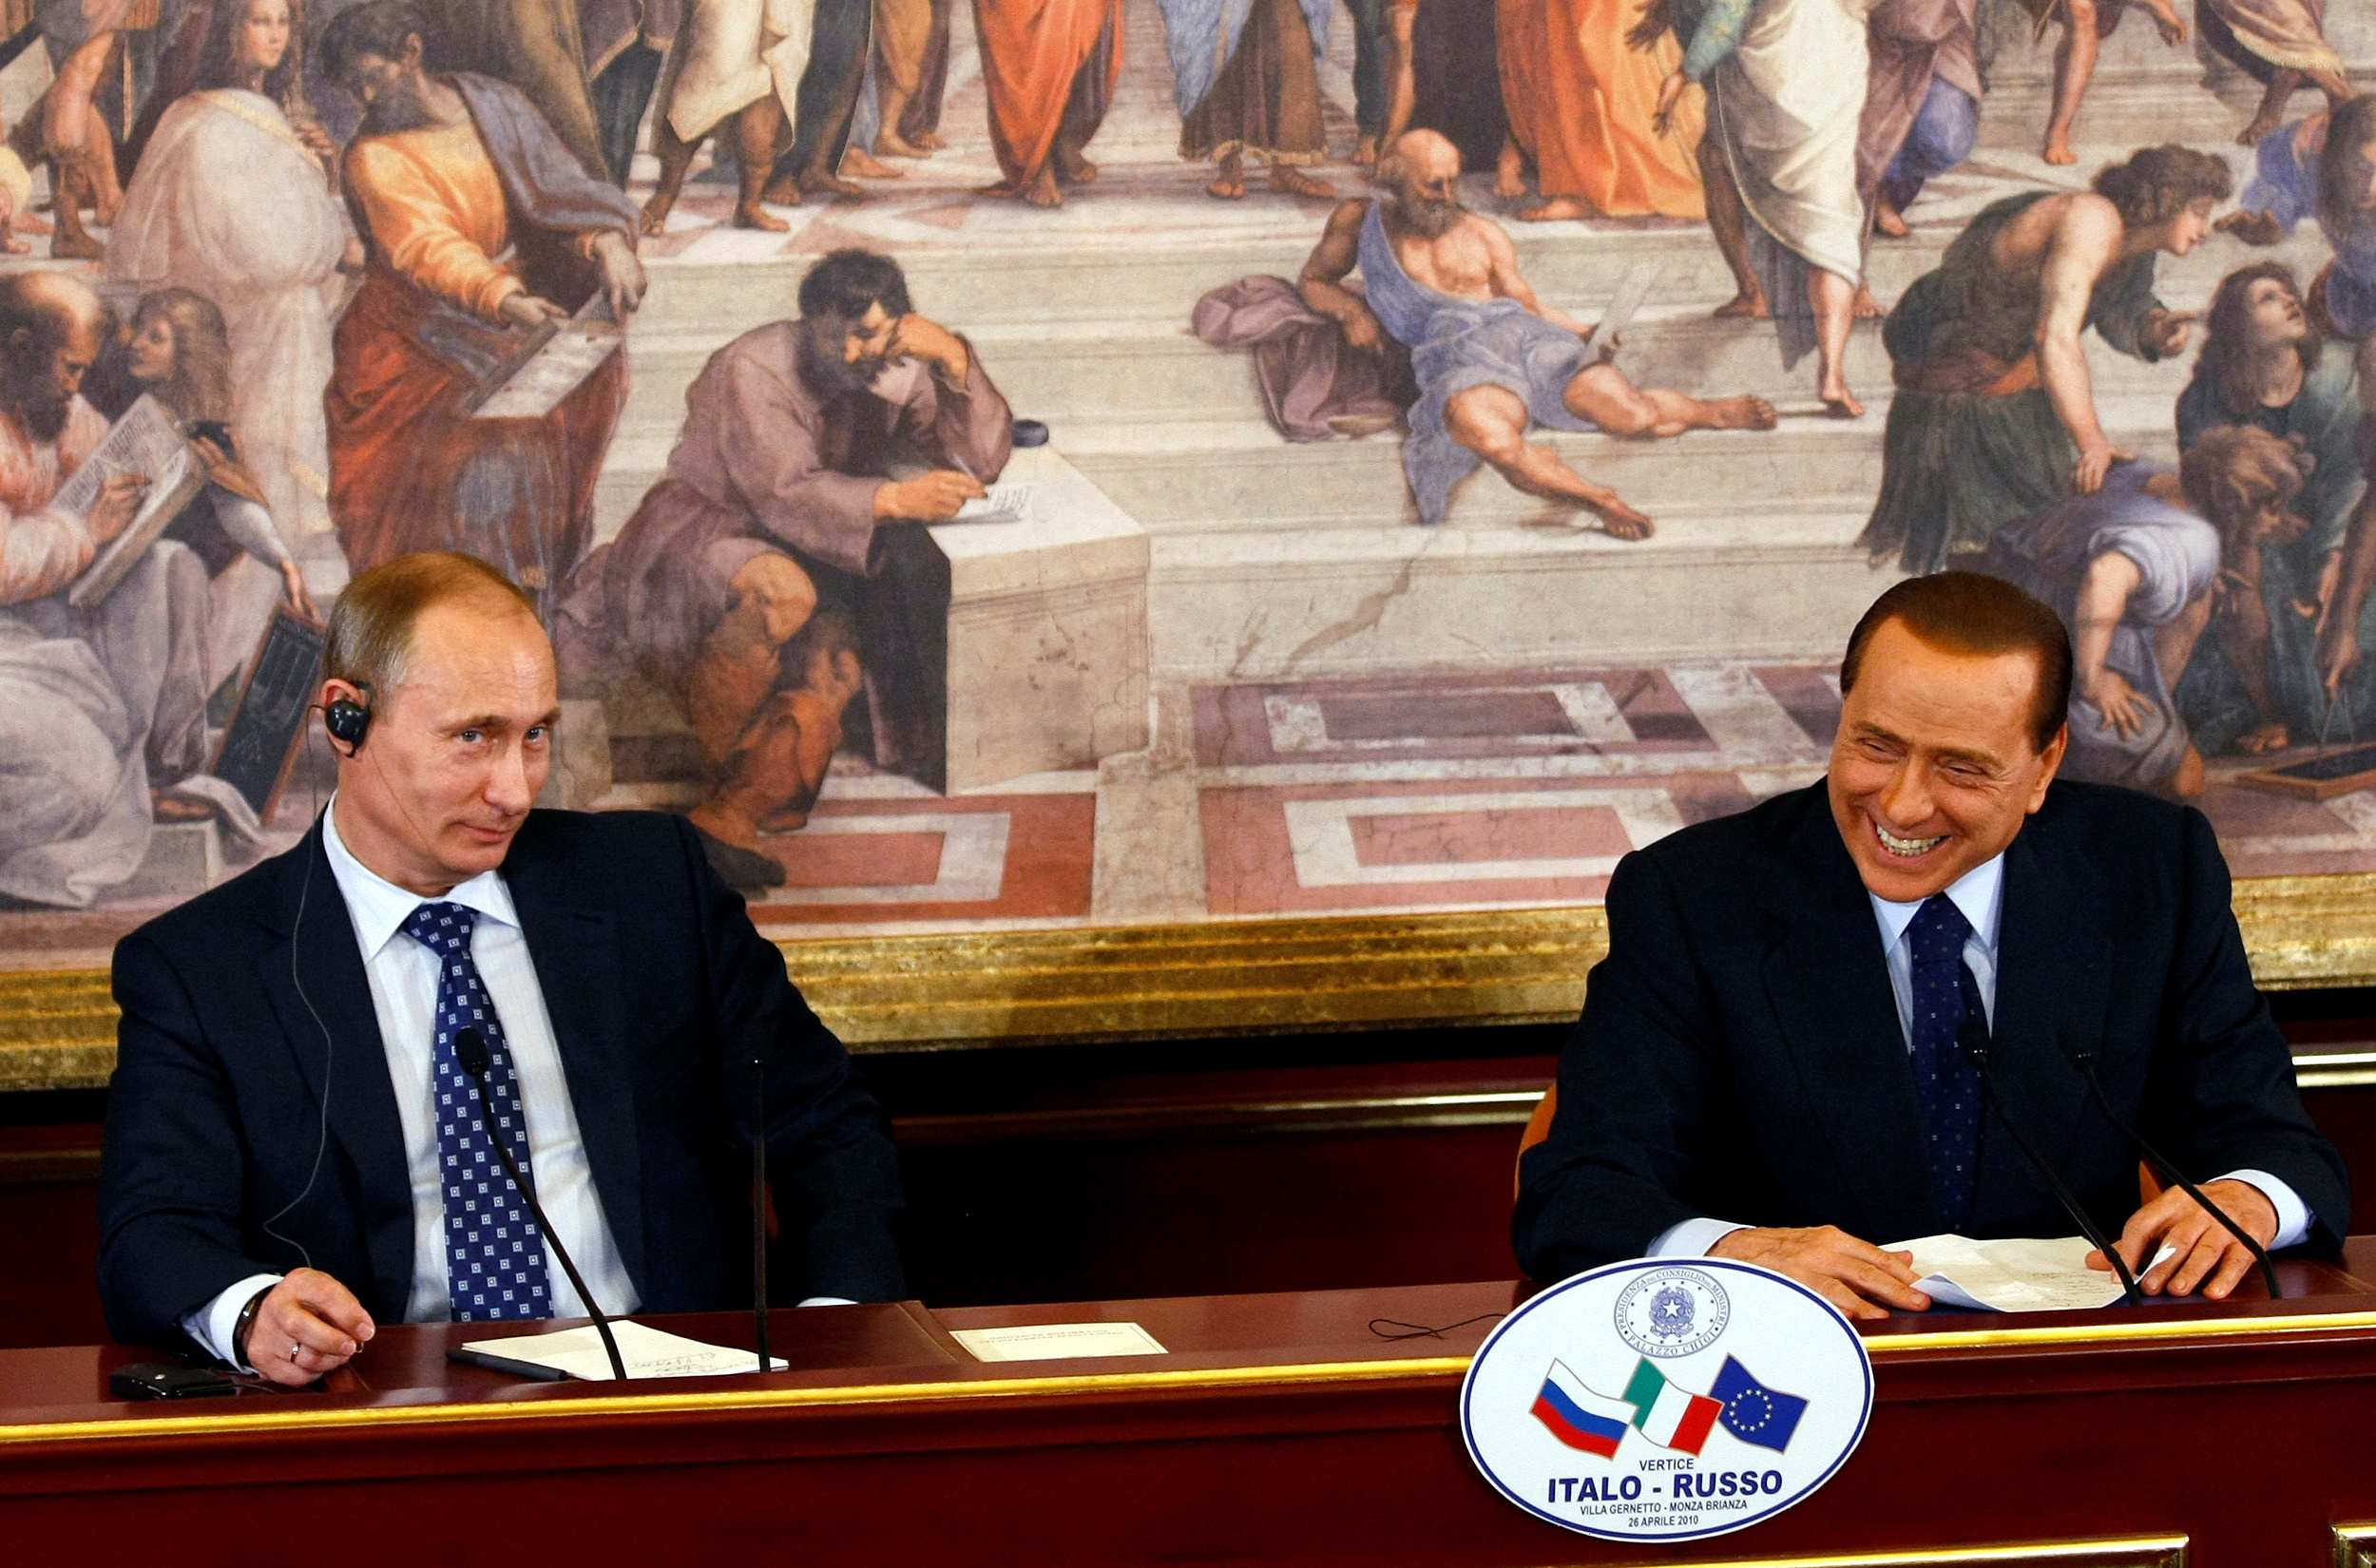 L'ex presidente del Consiglio Silvio Berlusconi sorride durante una conferenza stampa con il presidente russo Vladimir Putin al vertice del 26 aprile 2010 a Villa Gerneto a Gerno, vicino a Milano.  REUTERS/Alessandro Garofalo